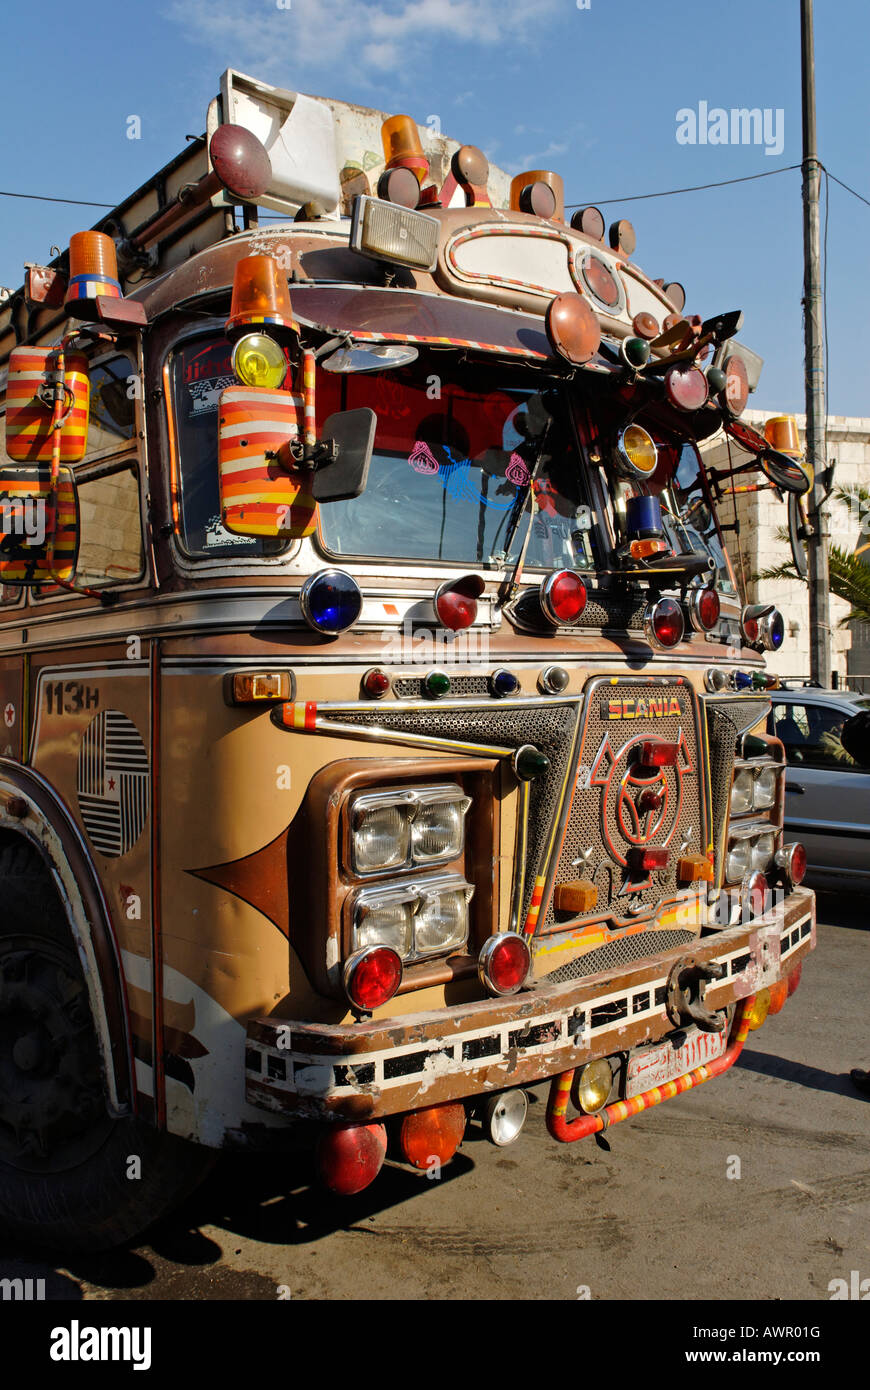 Vieux bus décoré dans la vieille ville de Damas, Syrie Banque D'Images